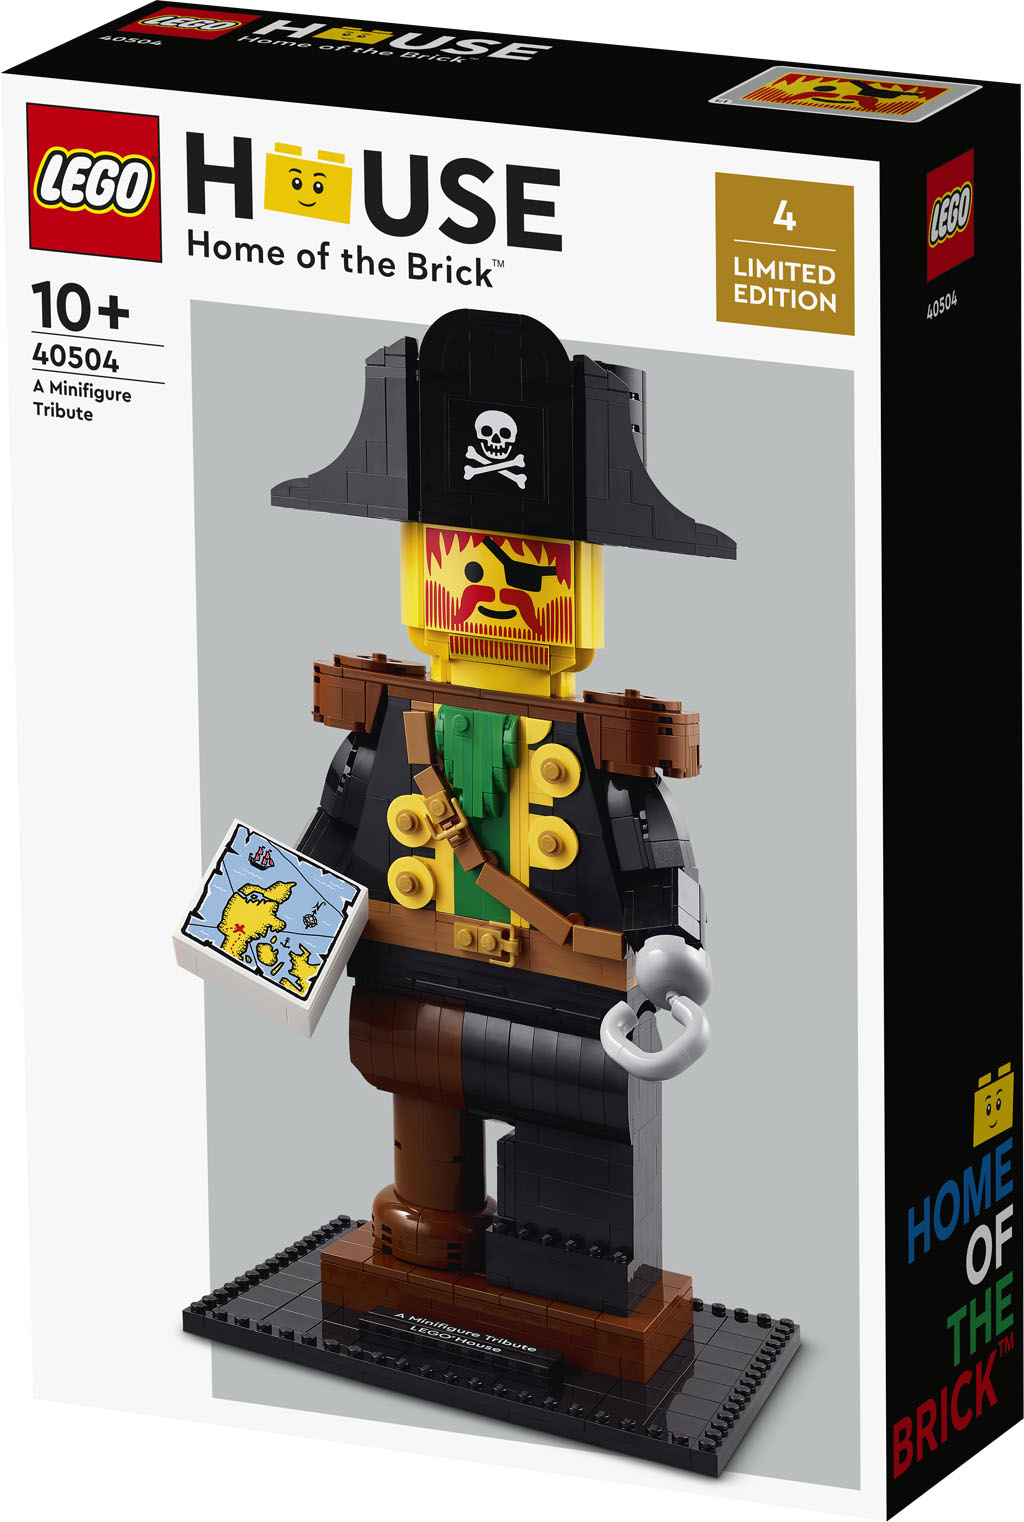 LEGO-House-A-Minifigure-Tribute-40504.jpg